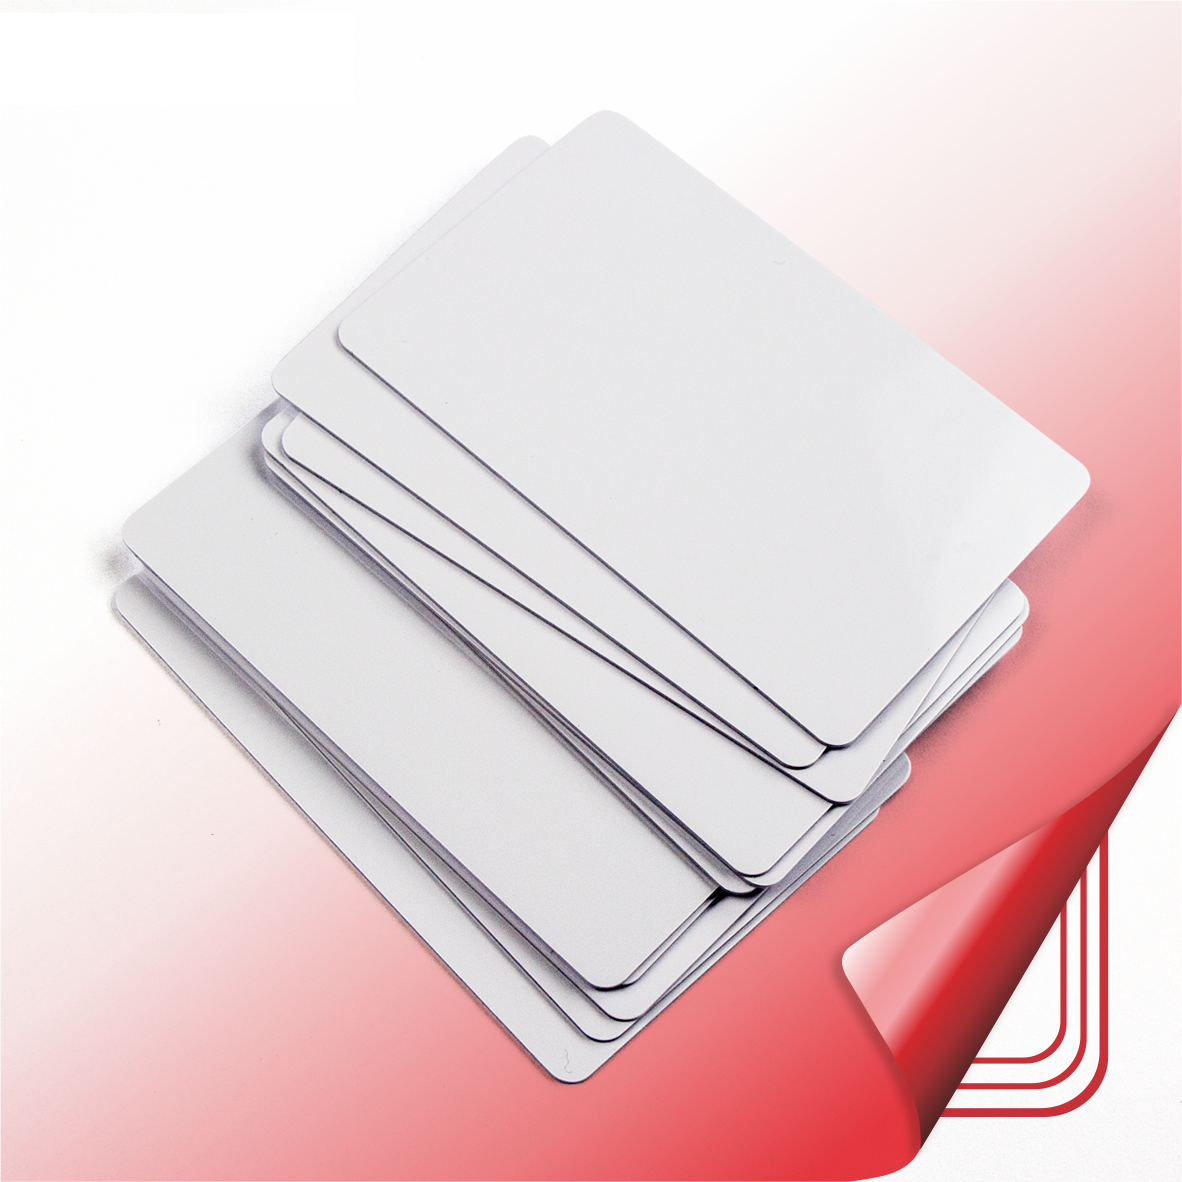 CR80ホテルキーアクセスコントロールカード用チップ付きプラスチックホワイトブランク印刷可能なPVCカード